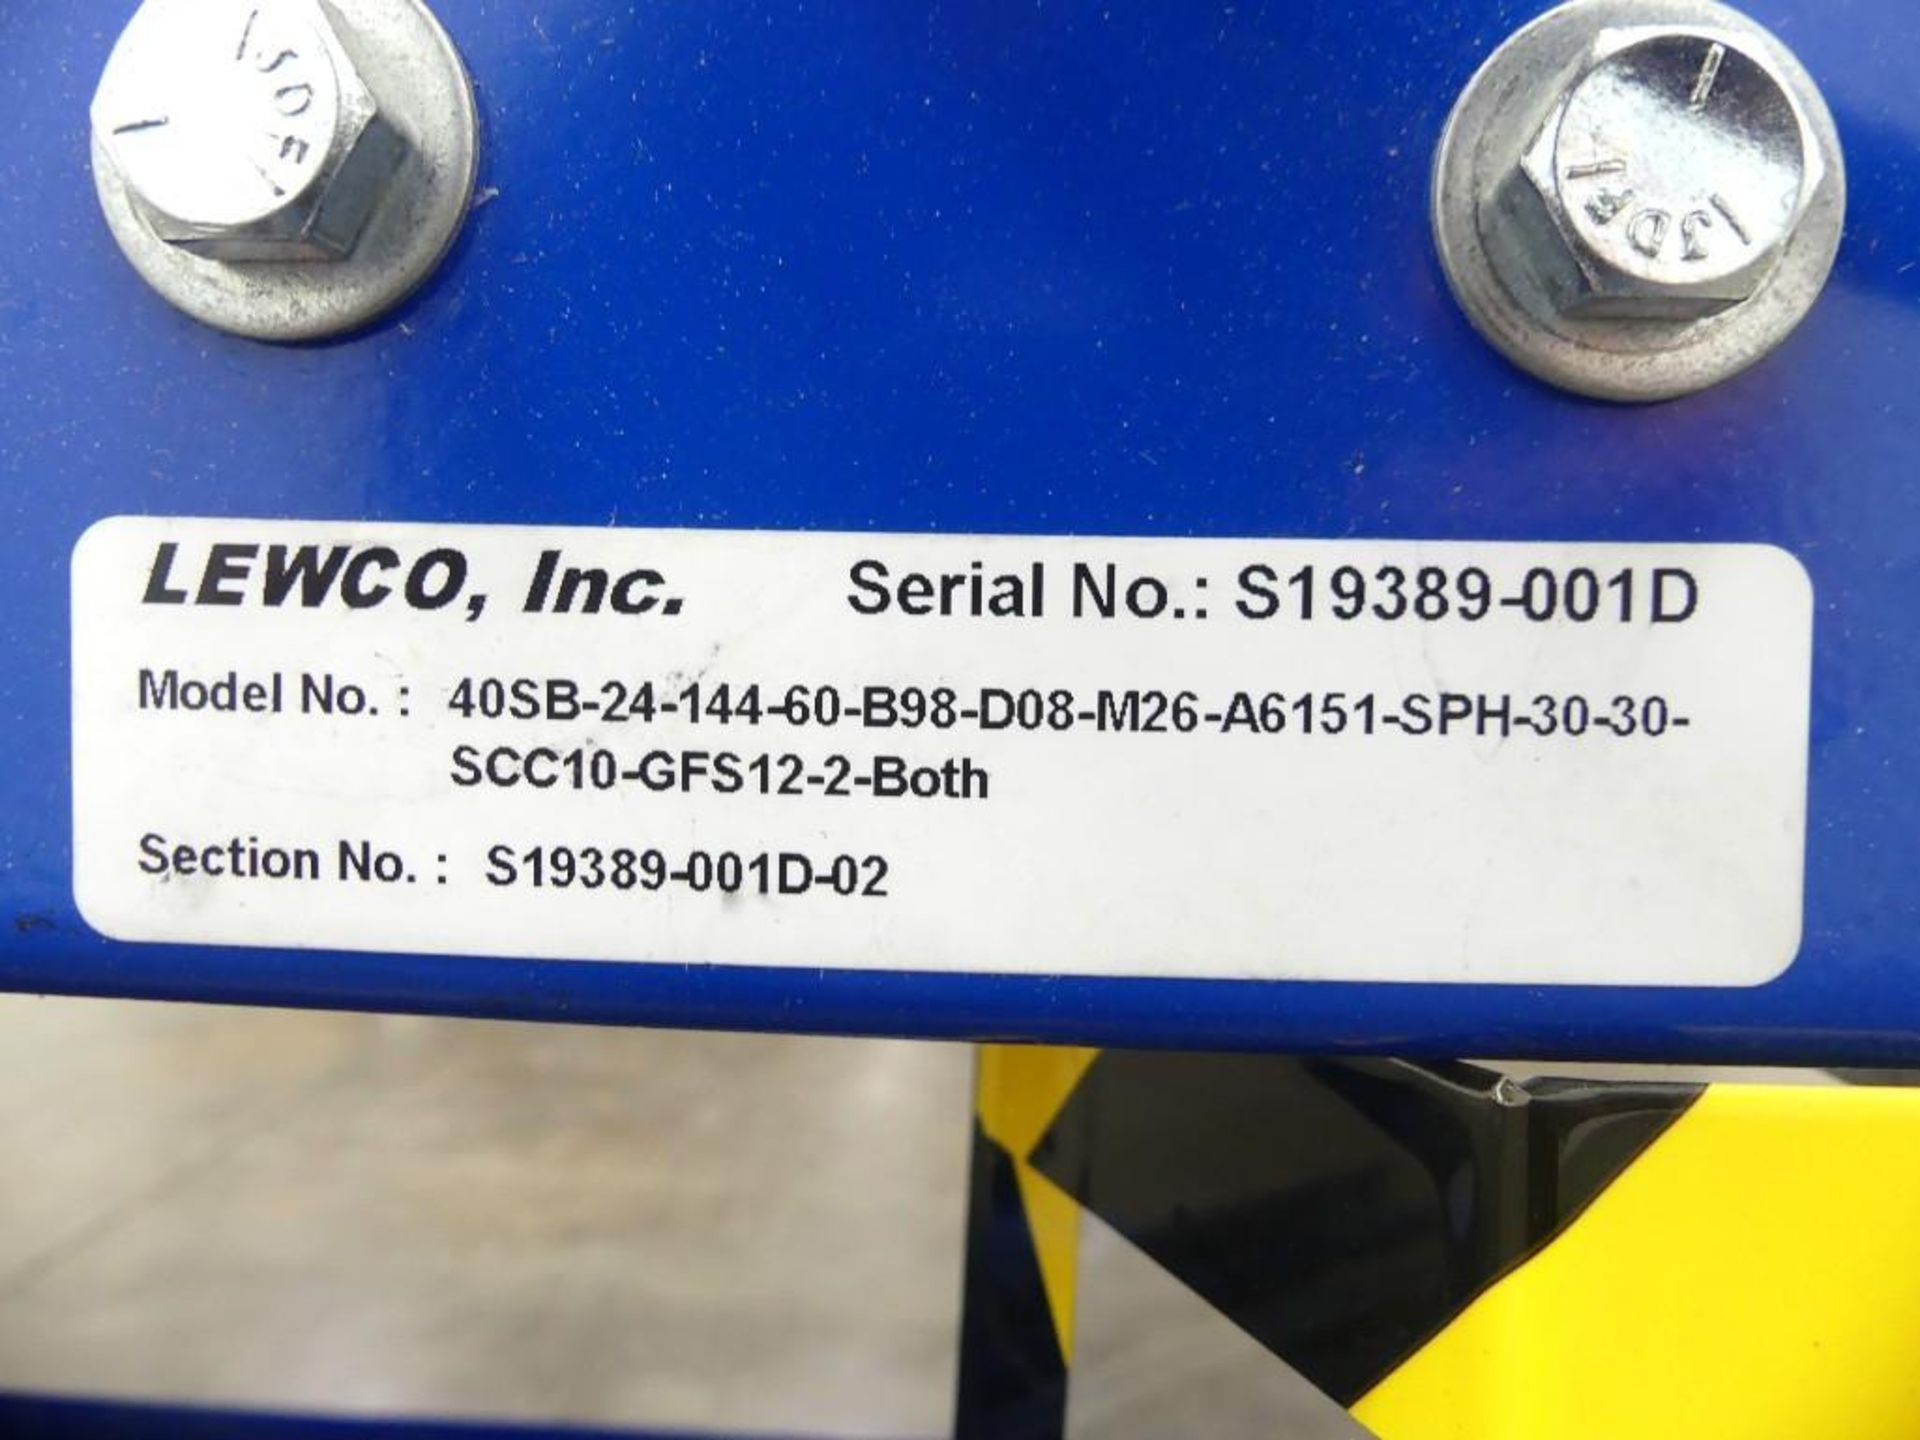 Lewco, Inc. 40SB-24-144-60-B98-D08-M26-A6151-SPH-36-36-SCC10 Low Profile Slider Bed Belt Conveyor - Image 13 of 16